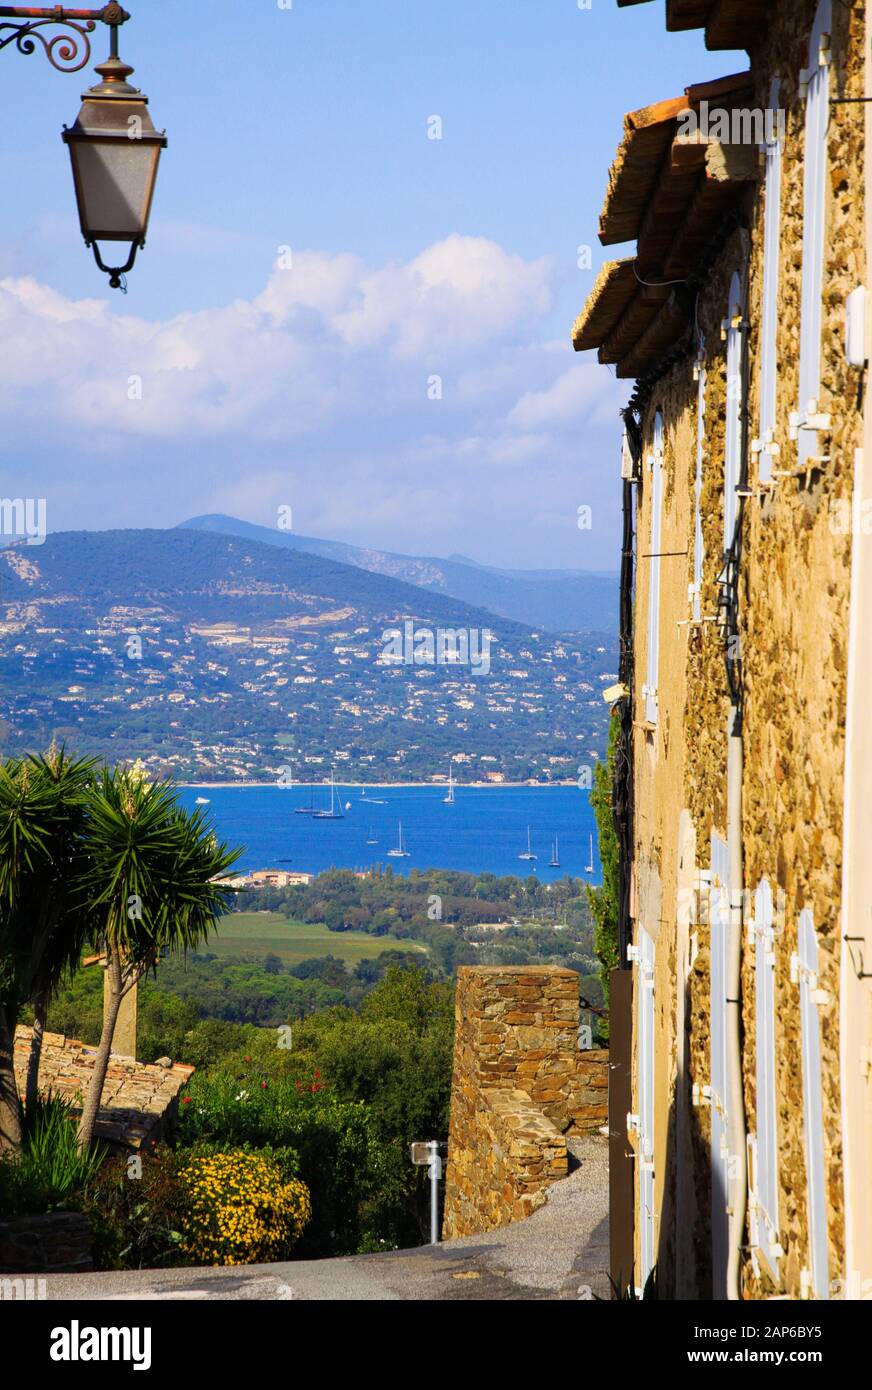 Vue au-delà de l'ancien mur de maison et lampe de rue du village de haut de colline méditerranéen Gassin sur la mer bleue du golfe de Saint-Tropez. Montagne floue avec cors Banque D'Images